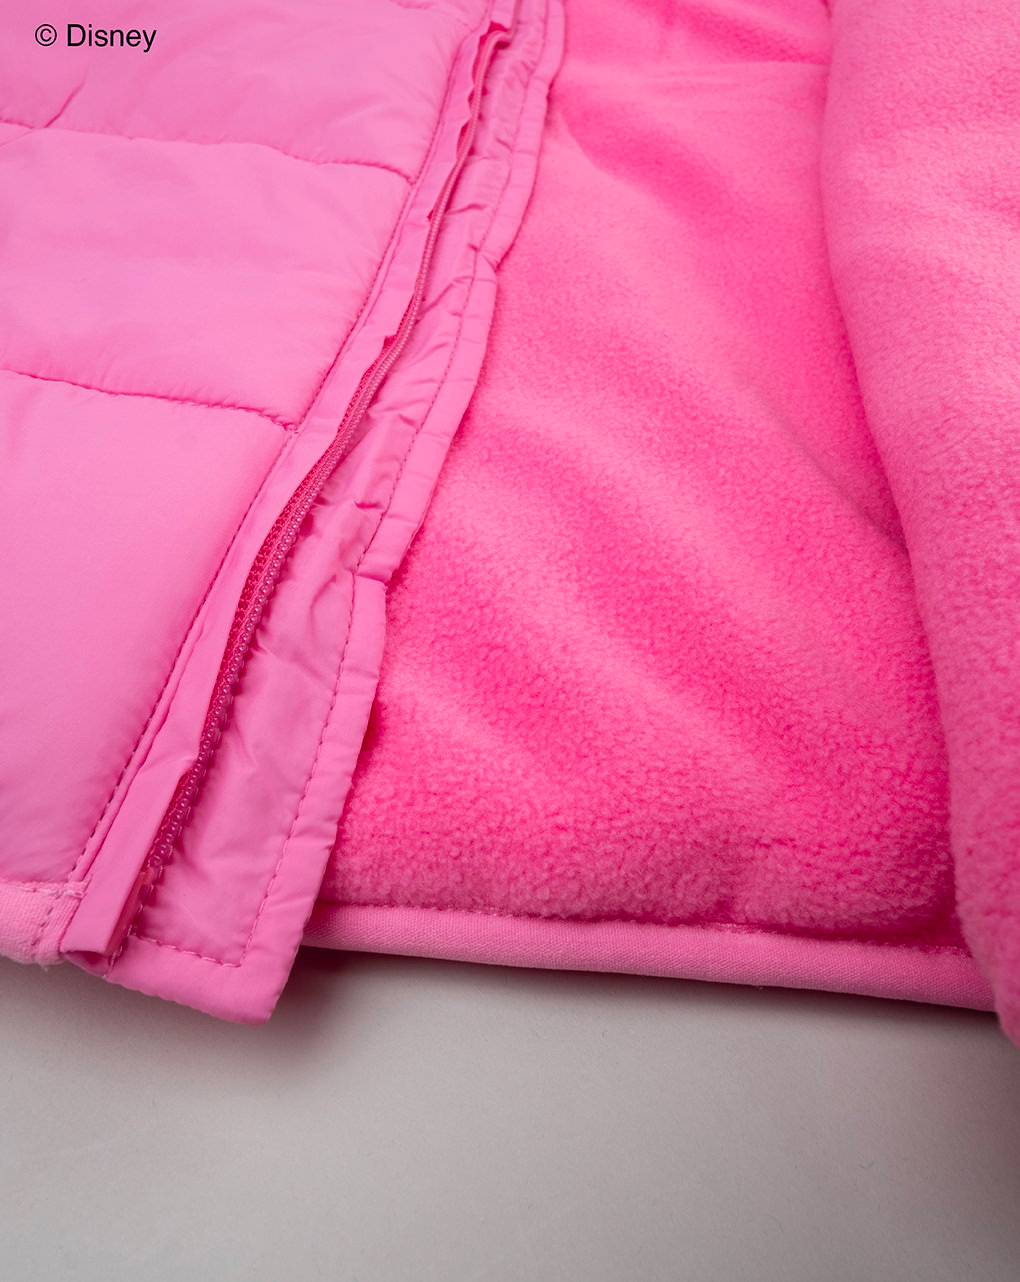 παιδικό μπουφάν ροζ με τη minnie για κορίτσι - Prénatal